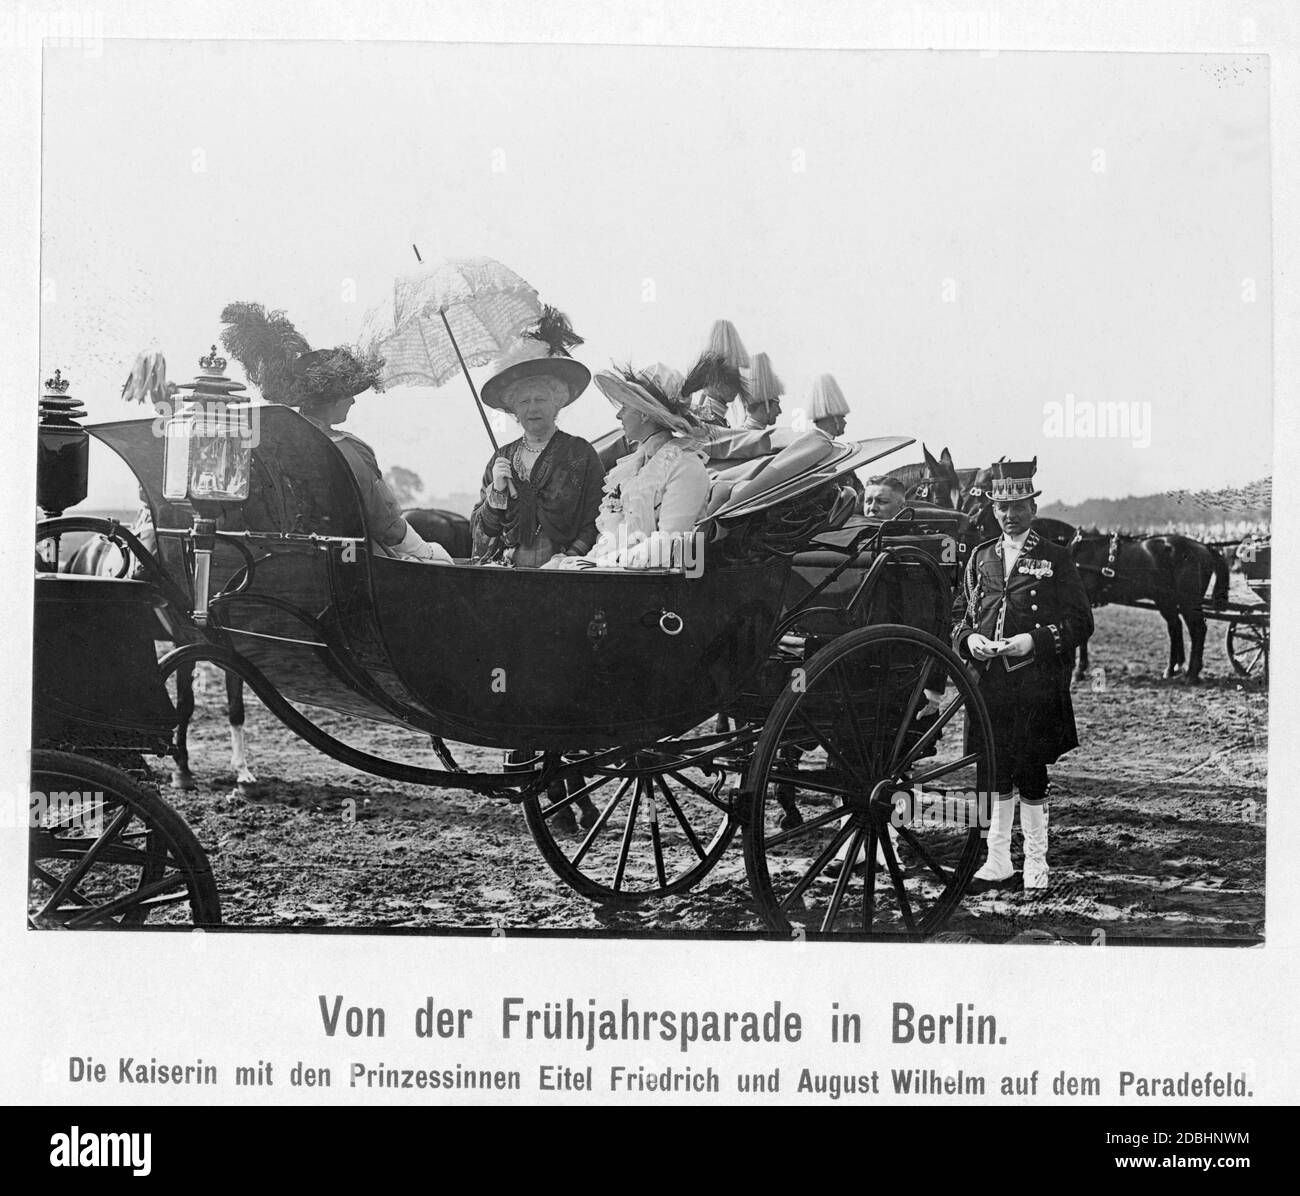 La princesse Alexandra Victoria de Prusse (née de Schleswig-Holstein-Sonderburg-Gluecksburg, à gauche), l'impératrice Augusta Victoria (au centre) et la princesse Sophie Charlotte de Prusse (née d'Oldenburg, à droite d'Augusta Victoria) s'assoient dans une calèche sur le terrain de la parade du printemps 1913 à Berlin. Banque D'Images